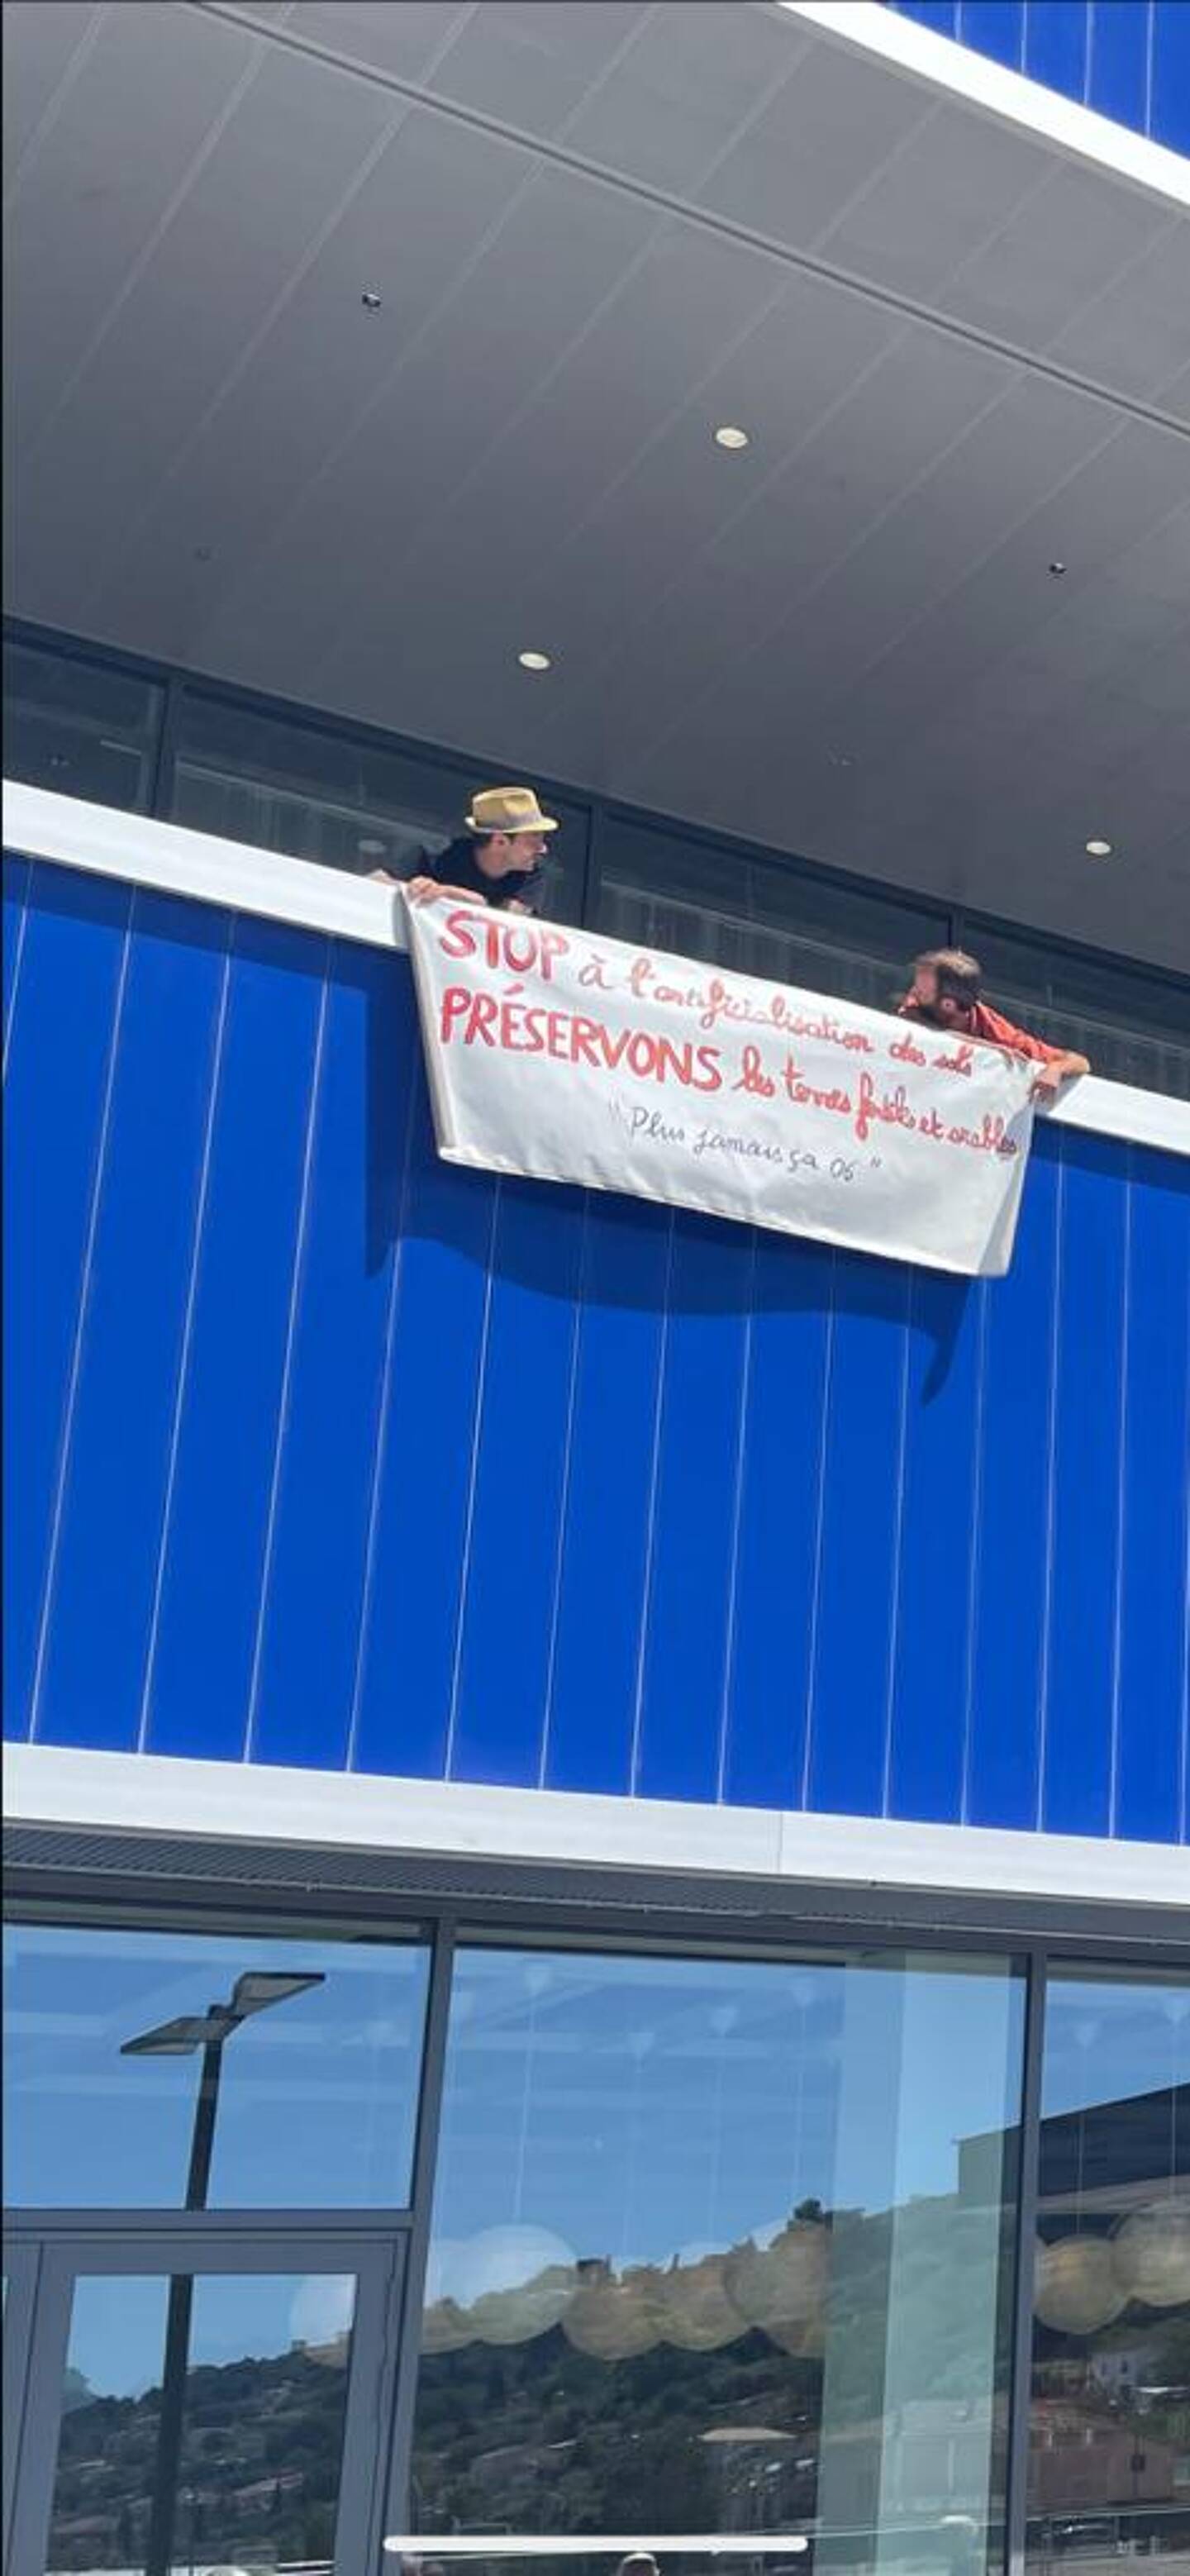 Le collectif "Plus jamais ça" a déployé sa banderole sur la façade d’Ikea, hier samedi.